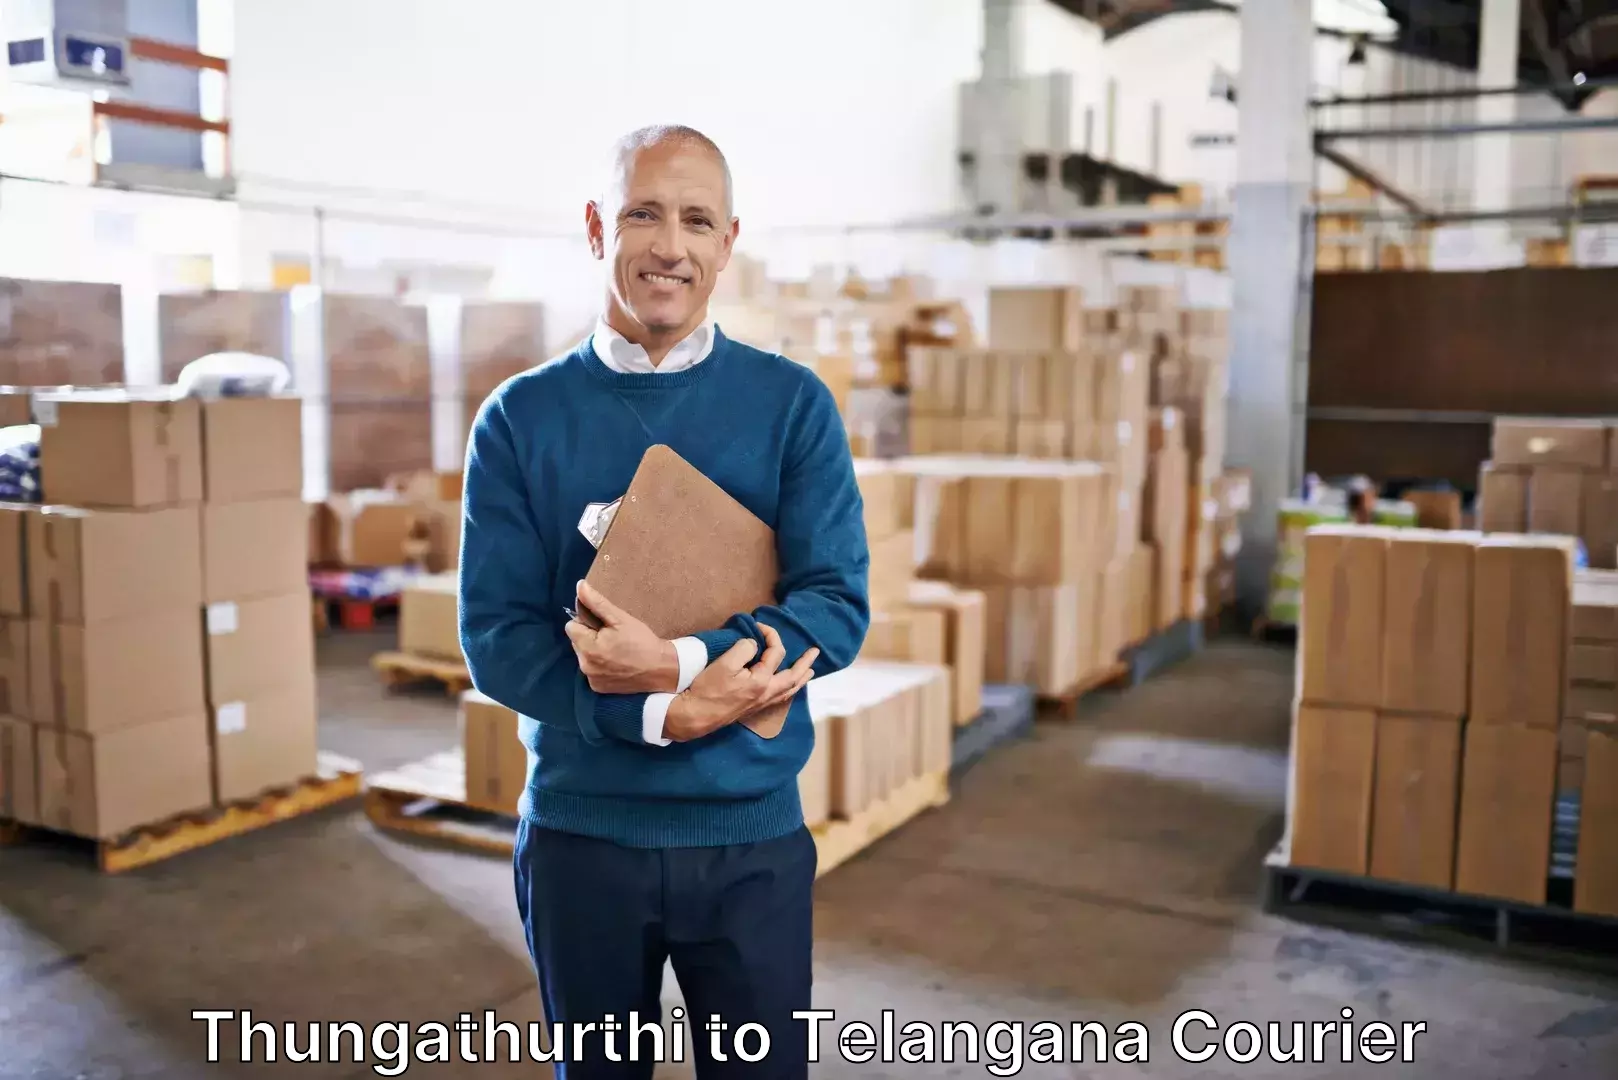 Luggage courier rates calculator Thungathurthi to Thungathurthi